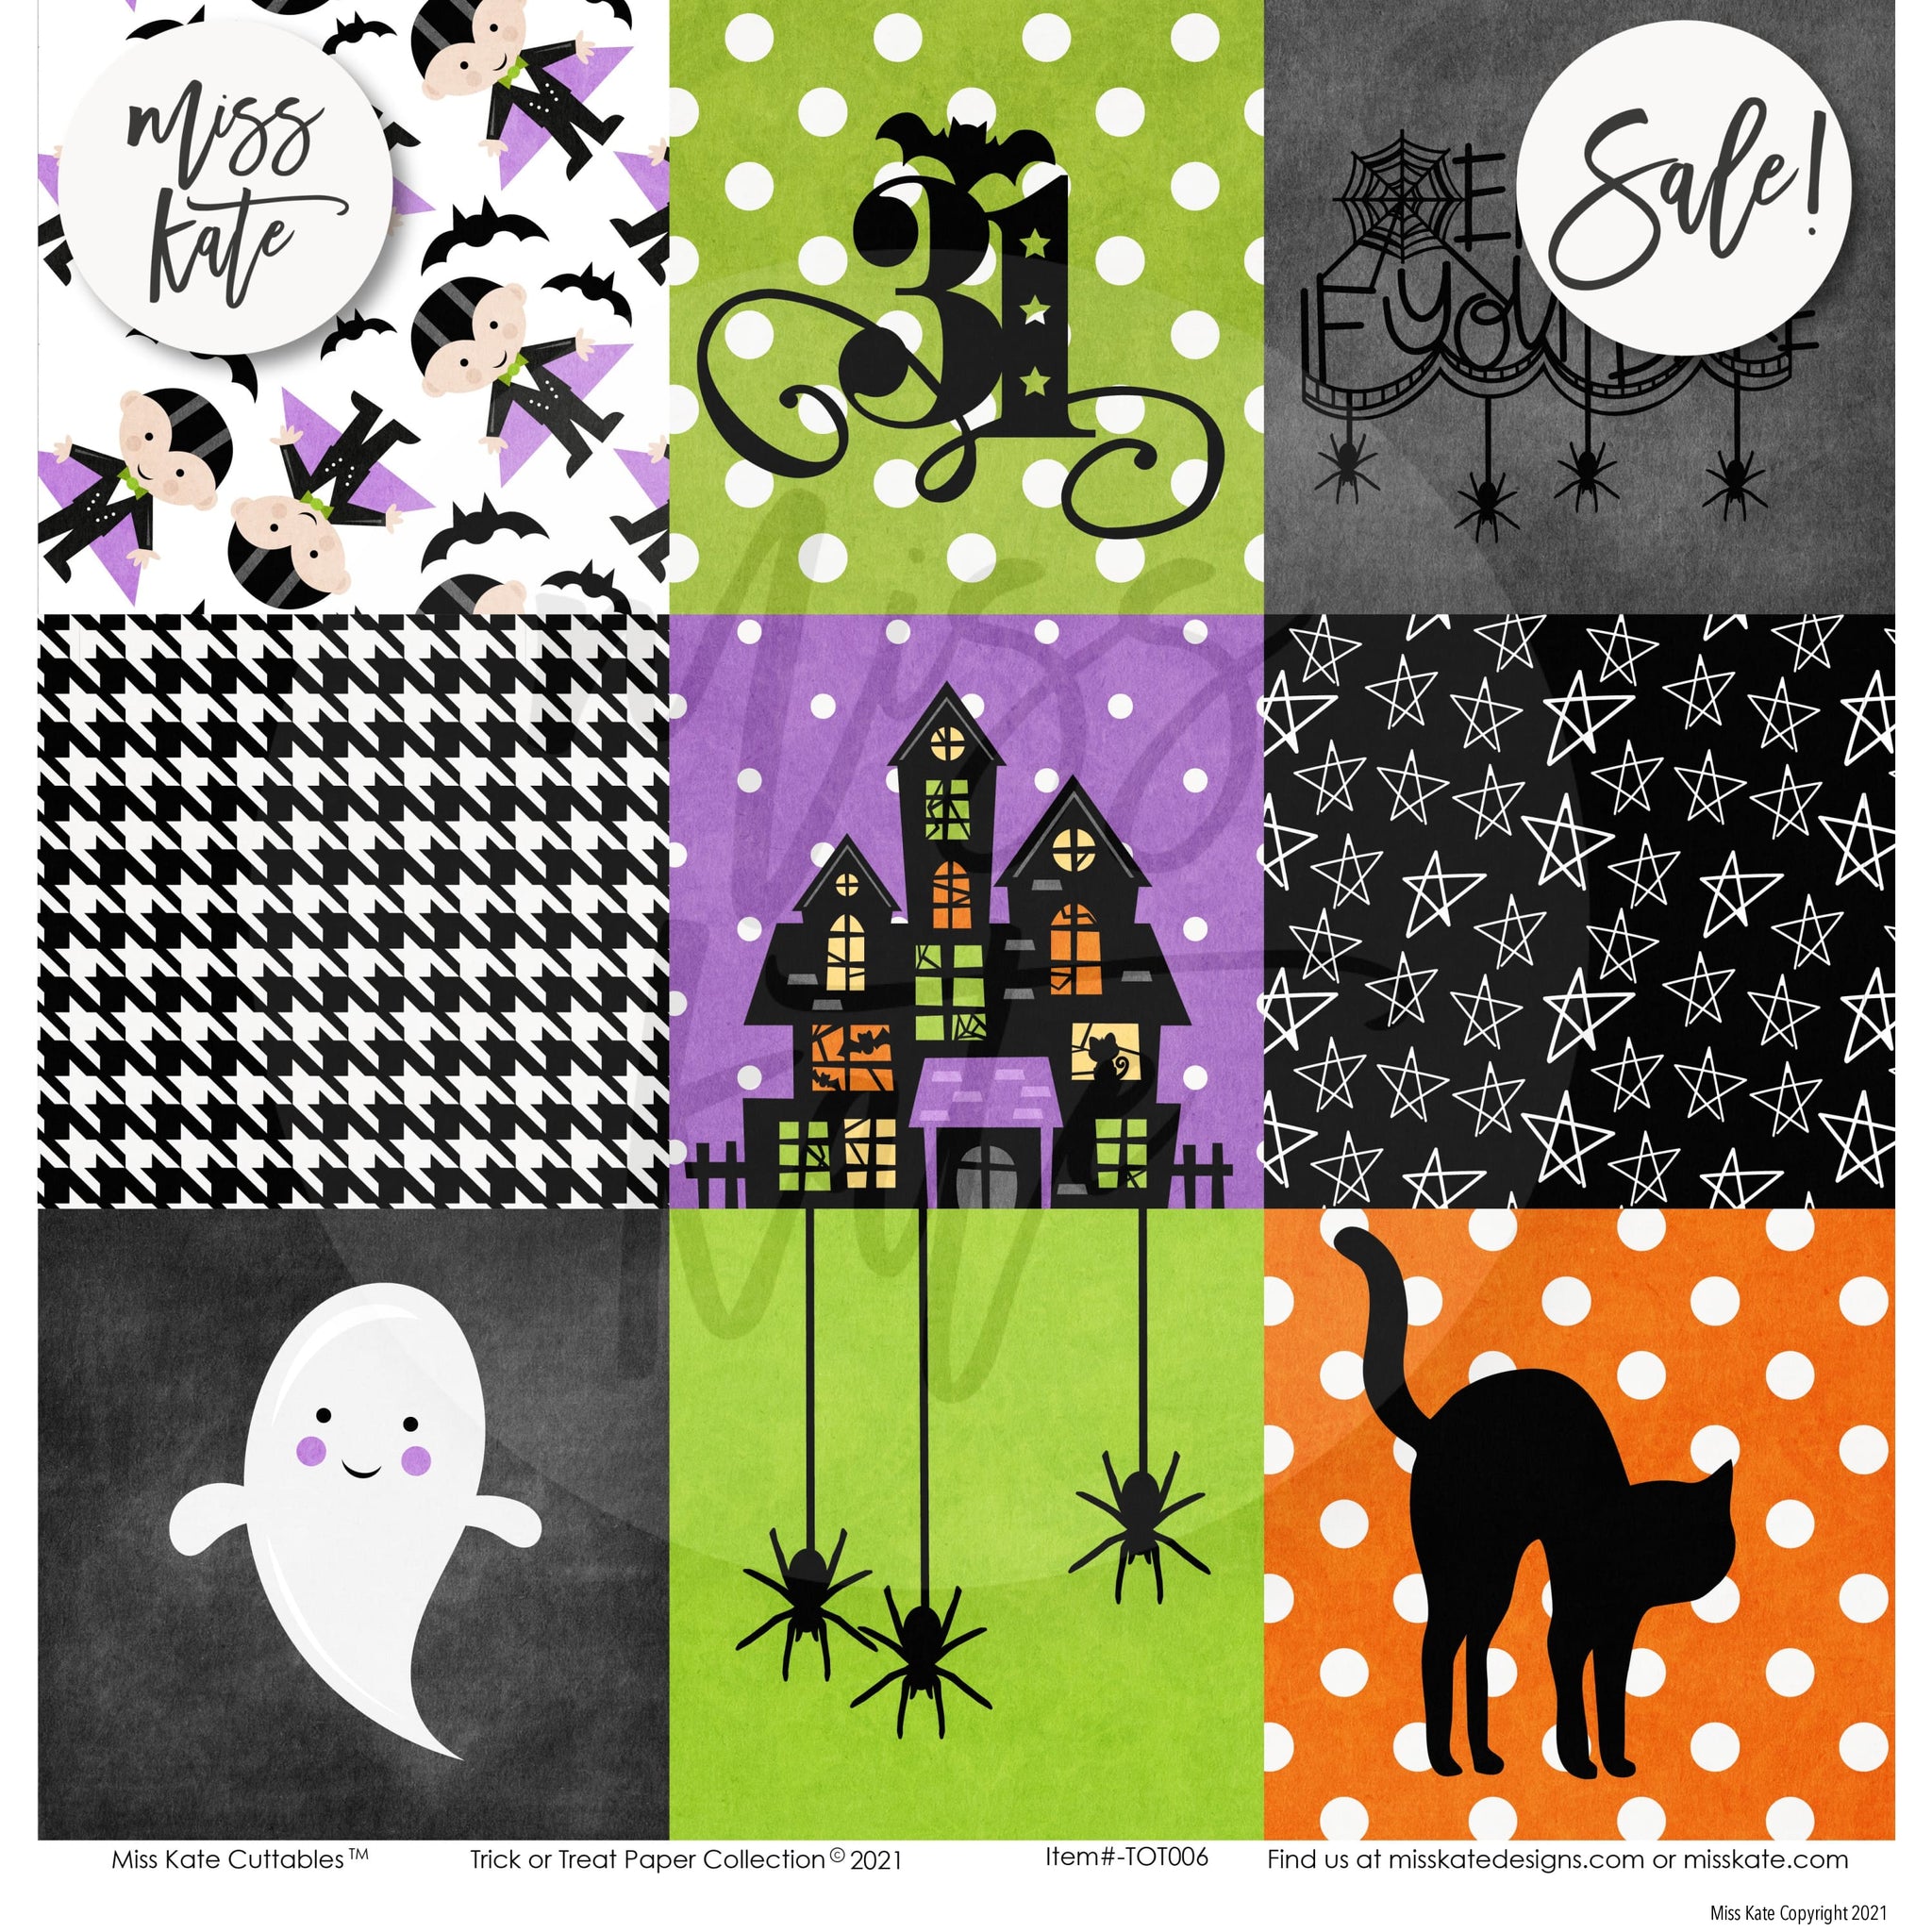 A Magical Disney Halloween Scrapbook Paper & Sticker Kit – MISS KATE